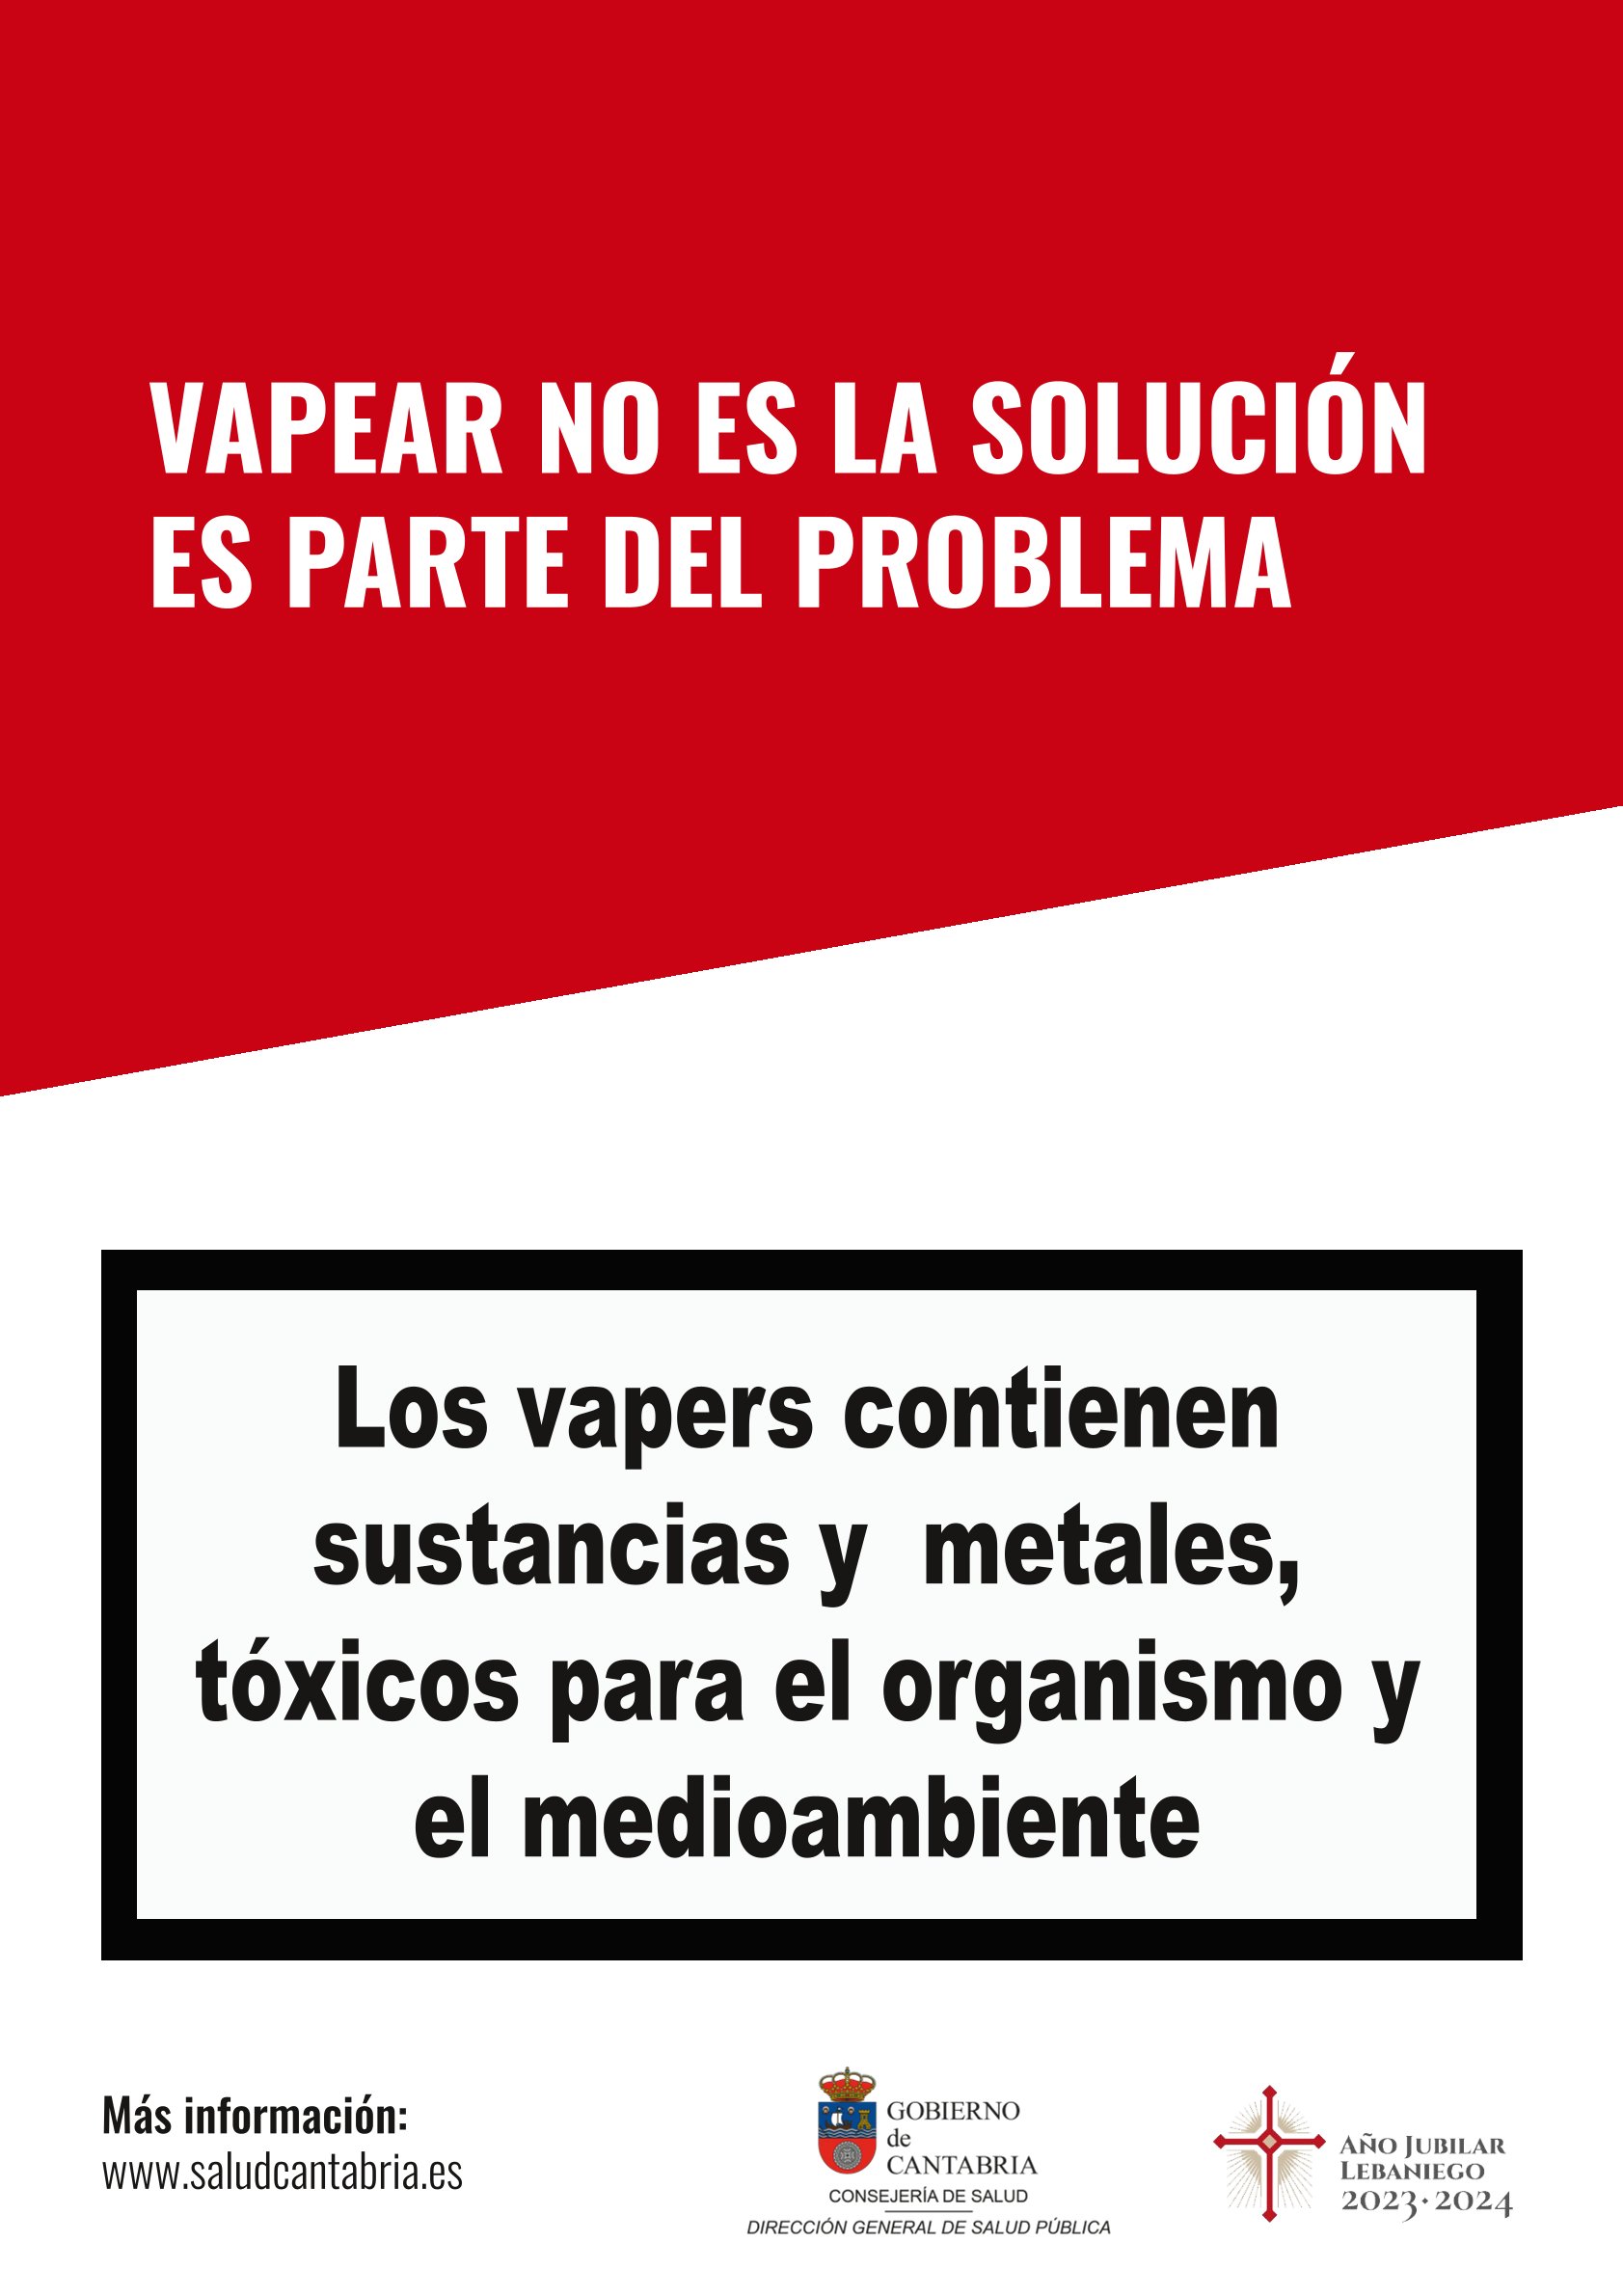 Cigarrillo electrónico, ¿problema o solución?